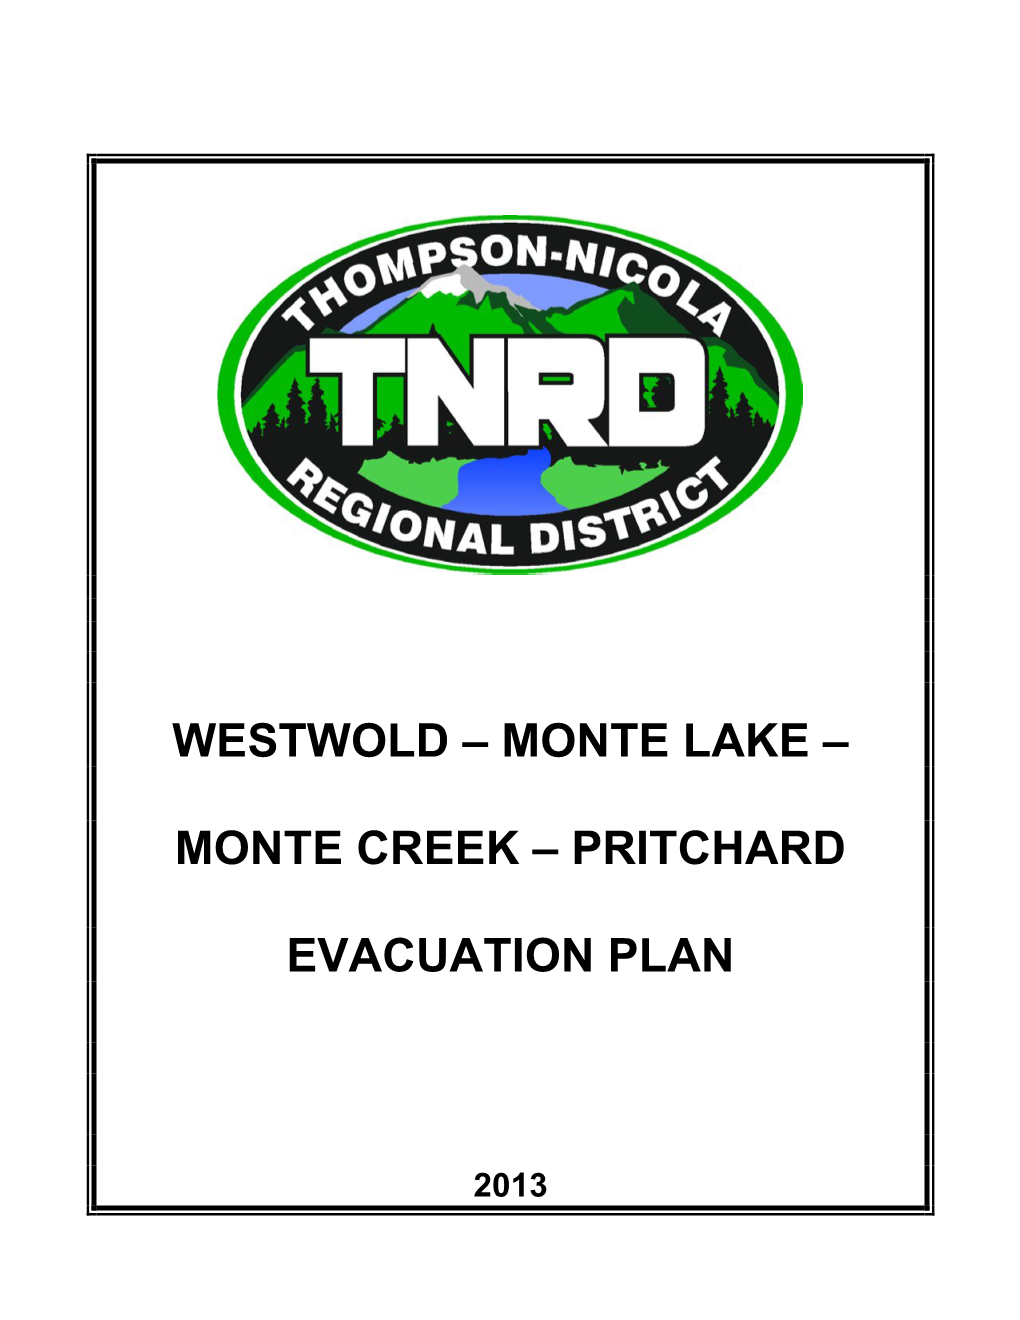 Westwold-Monte Lake-Monte Creek-Pritchard